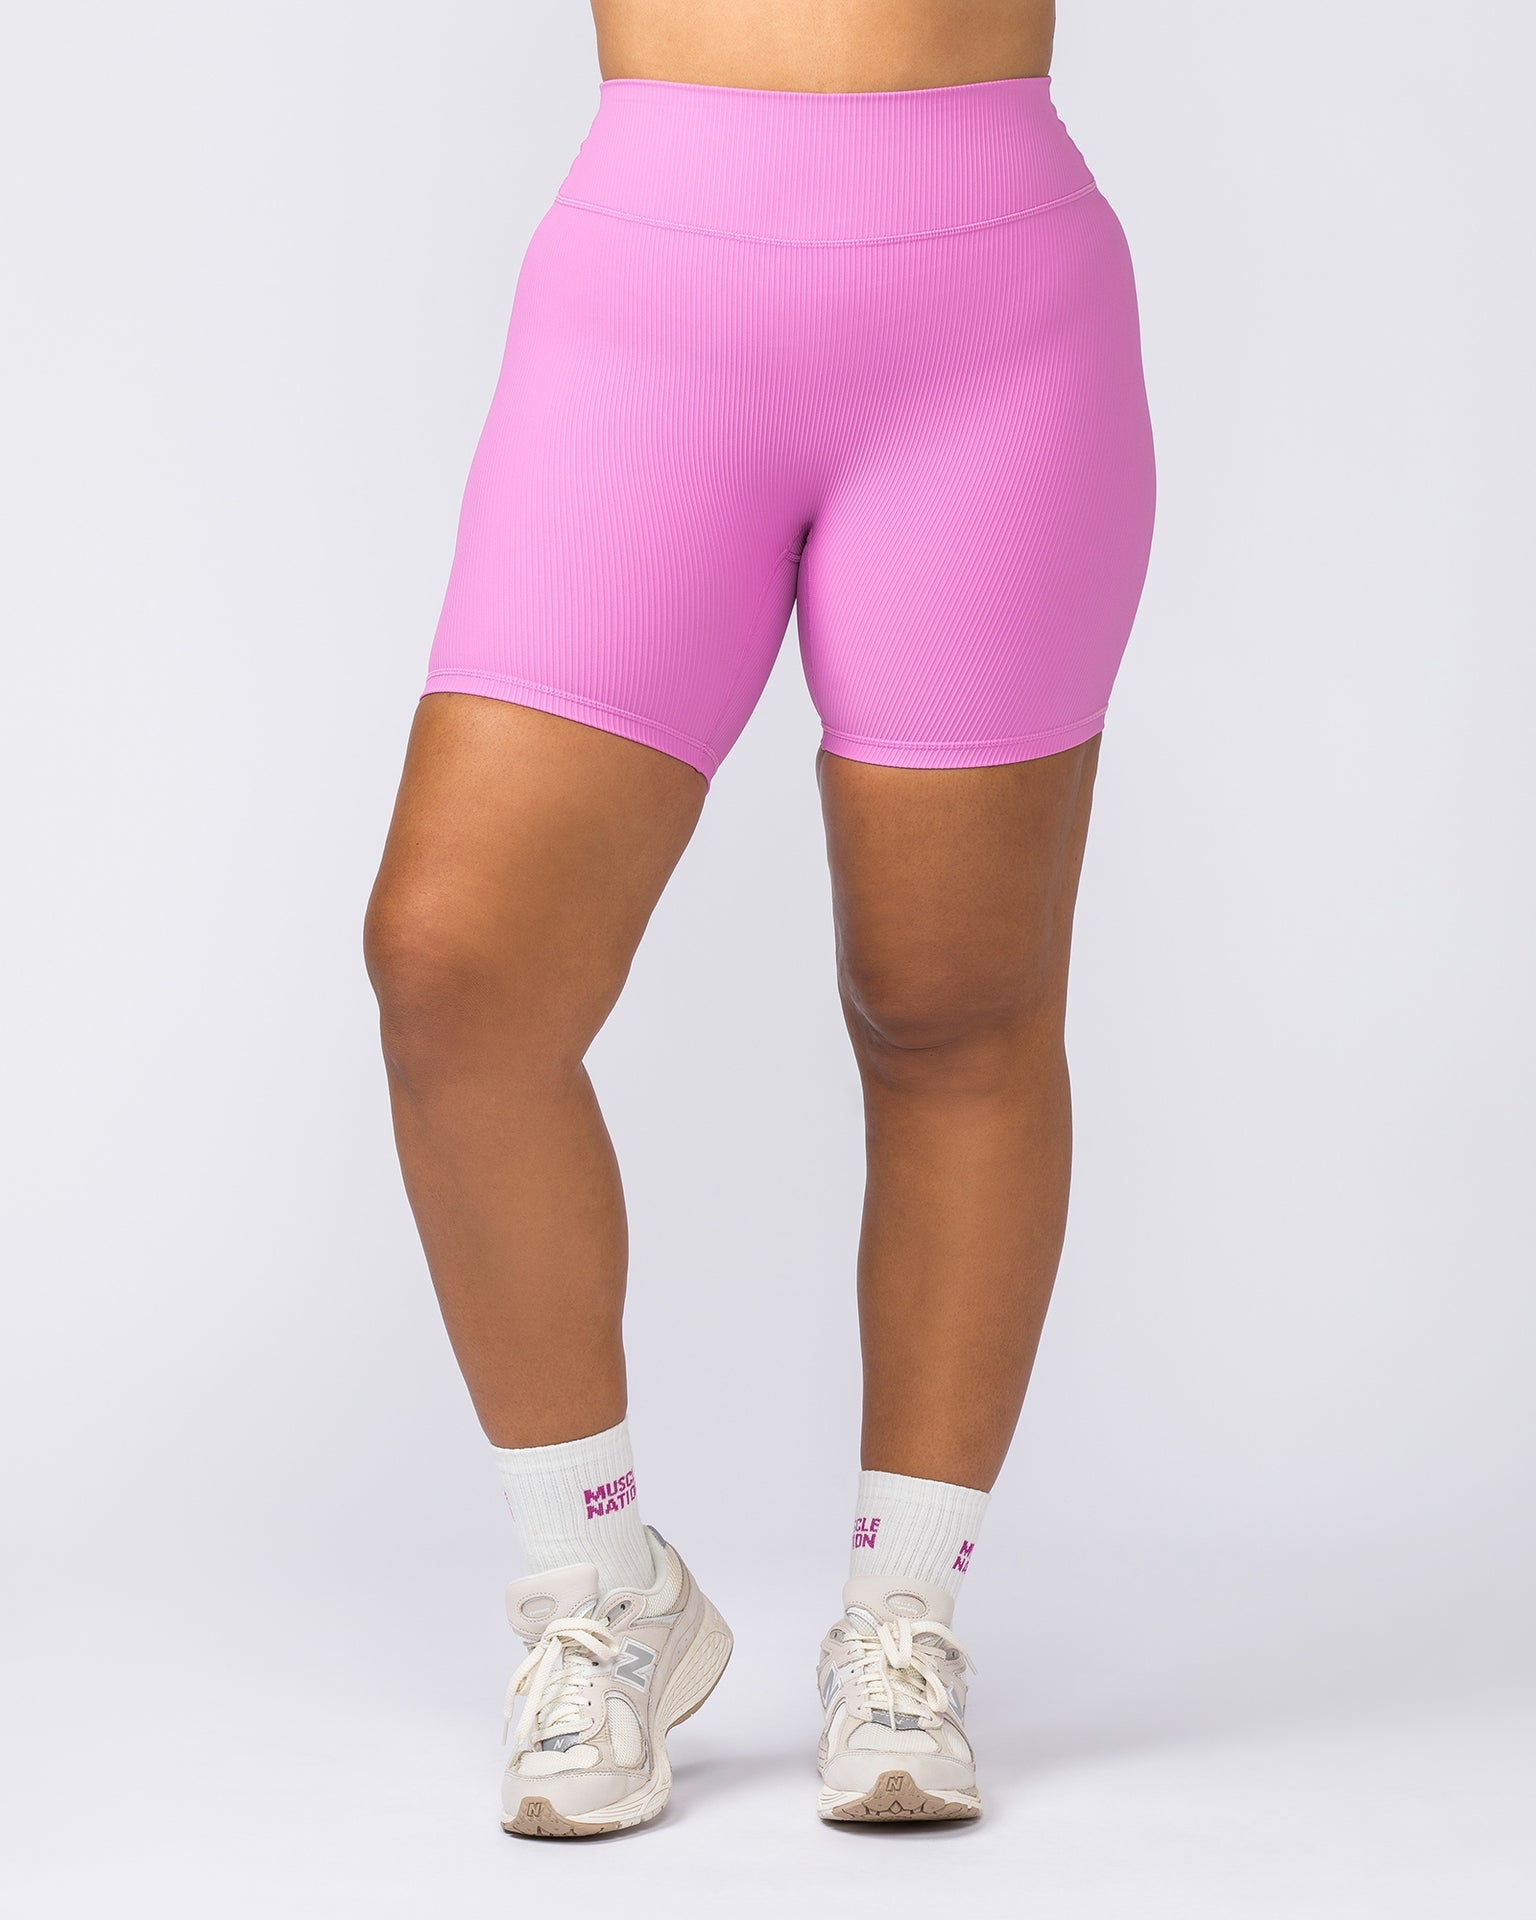 Muscle Nation Bike Shorts Zero Rise Rib Bike Shorts - Fondant Pink